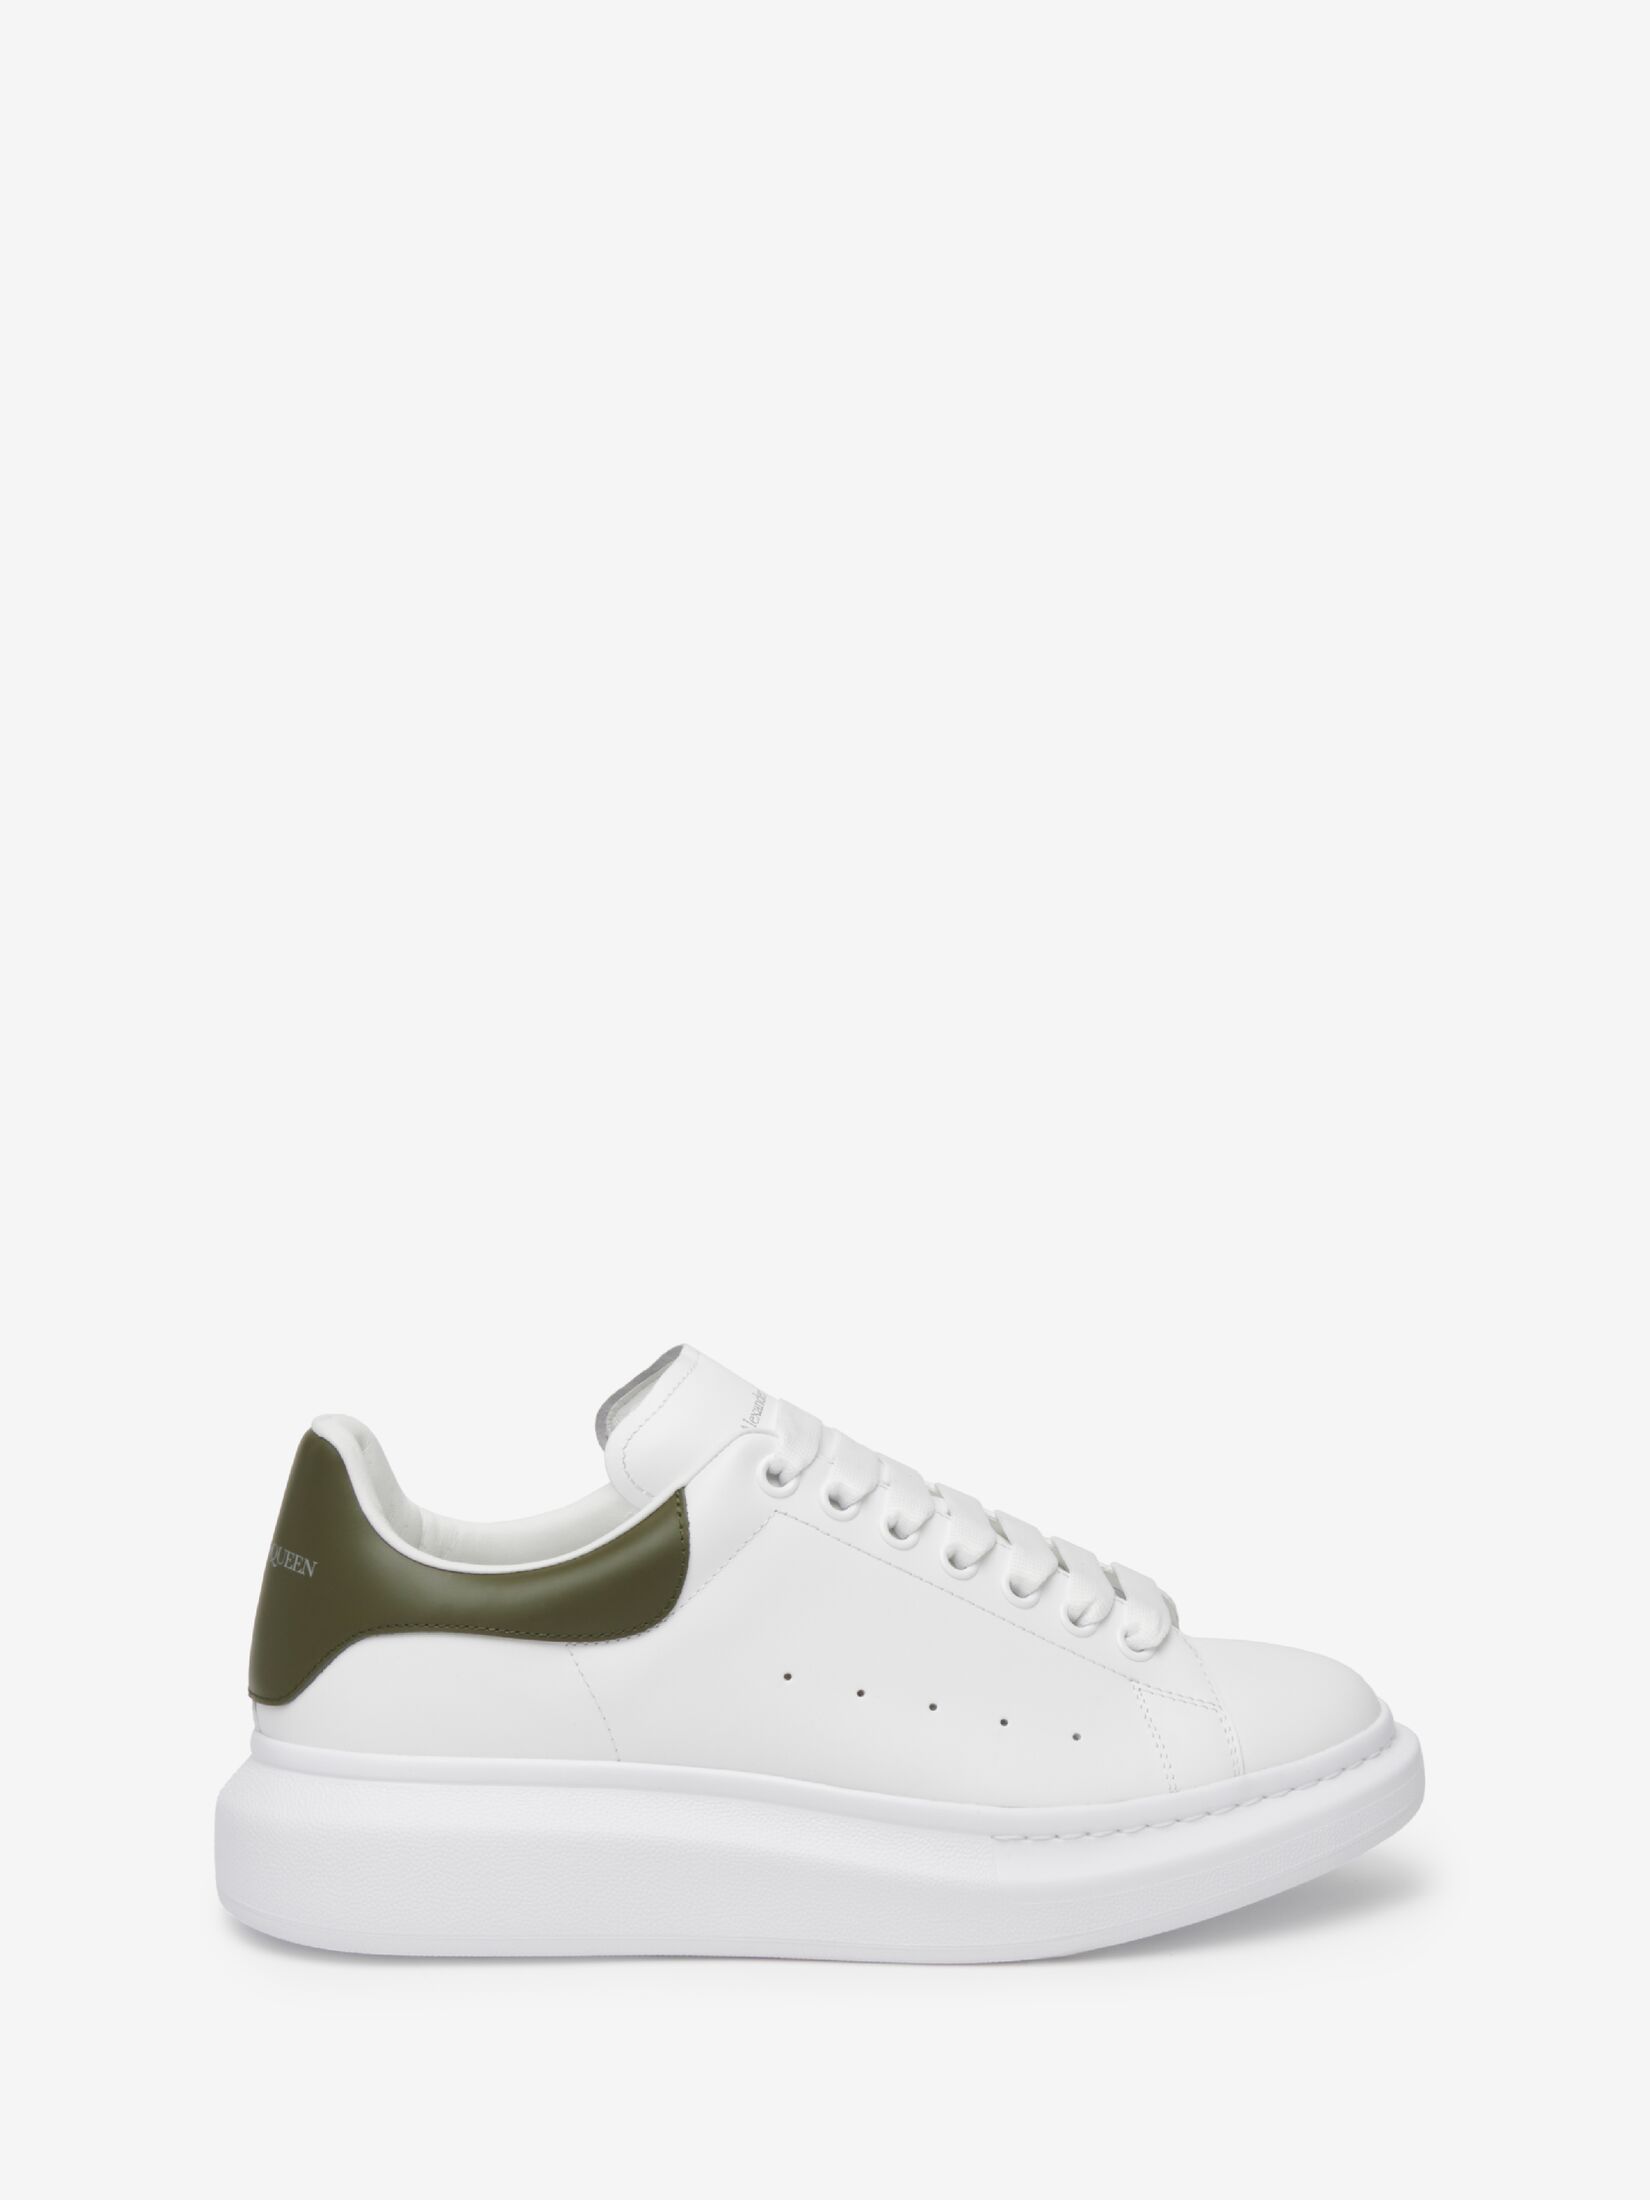 Oversized Sneaker in White/Khaki | Alexander McQueen US